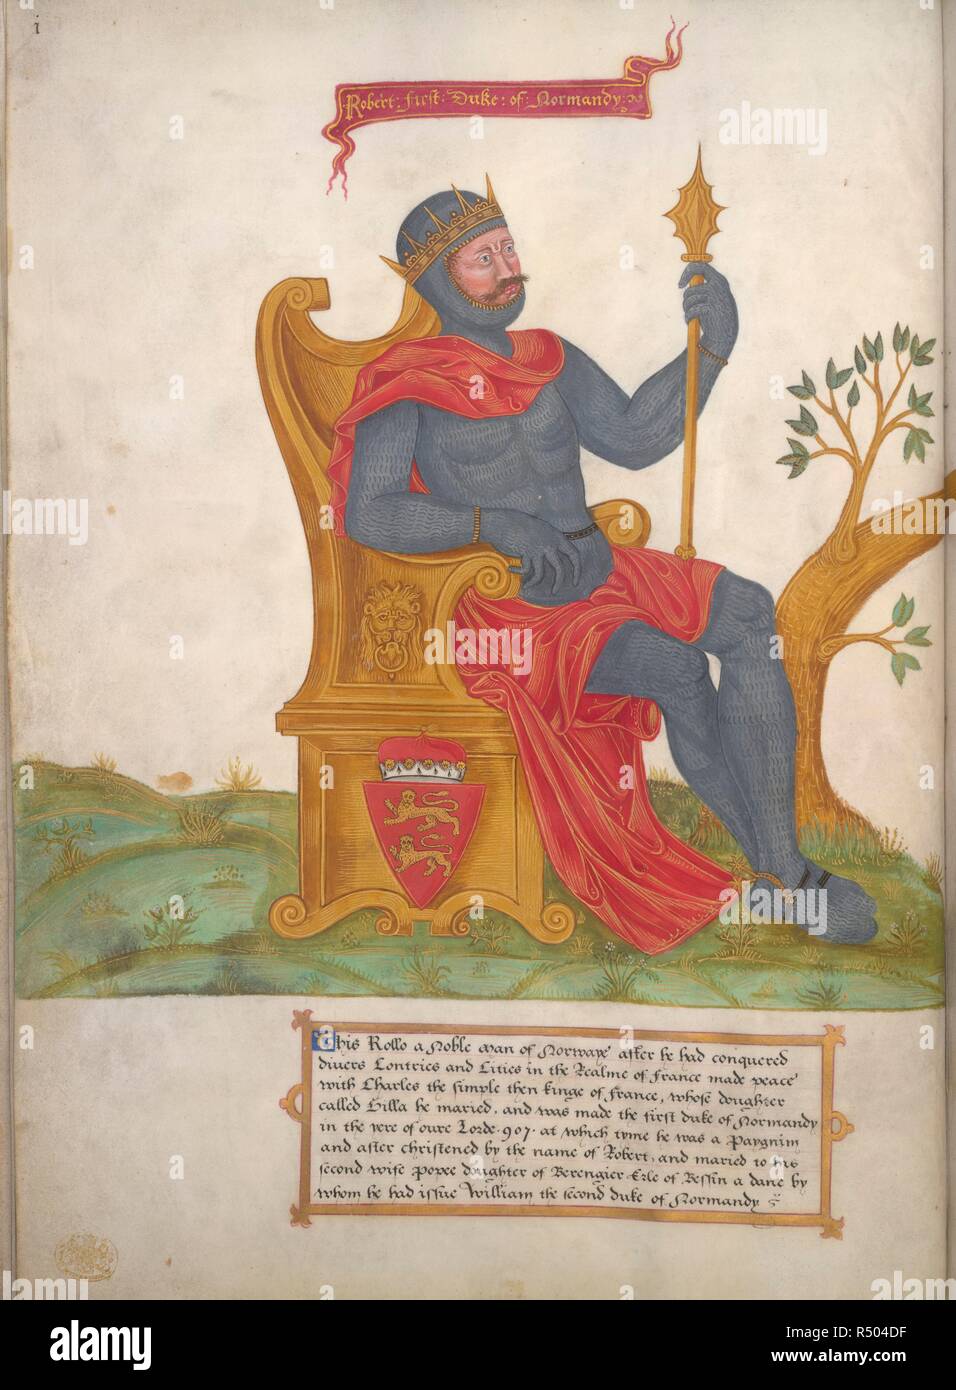 Rollo (Robert), Herzog der Normandie, sitzt das Tragen von Kettenhemden; die genealogischen Baum aus der Nähe von seinen Füßen. Genealogie der Königin Elizabeth I. in England; c. 1567. Quelle: King's 396, f4v. Sprache: Englisch. Stockfoto